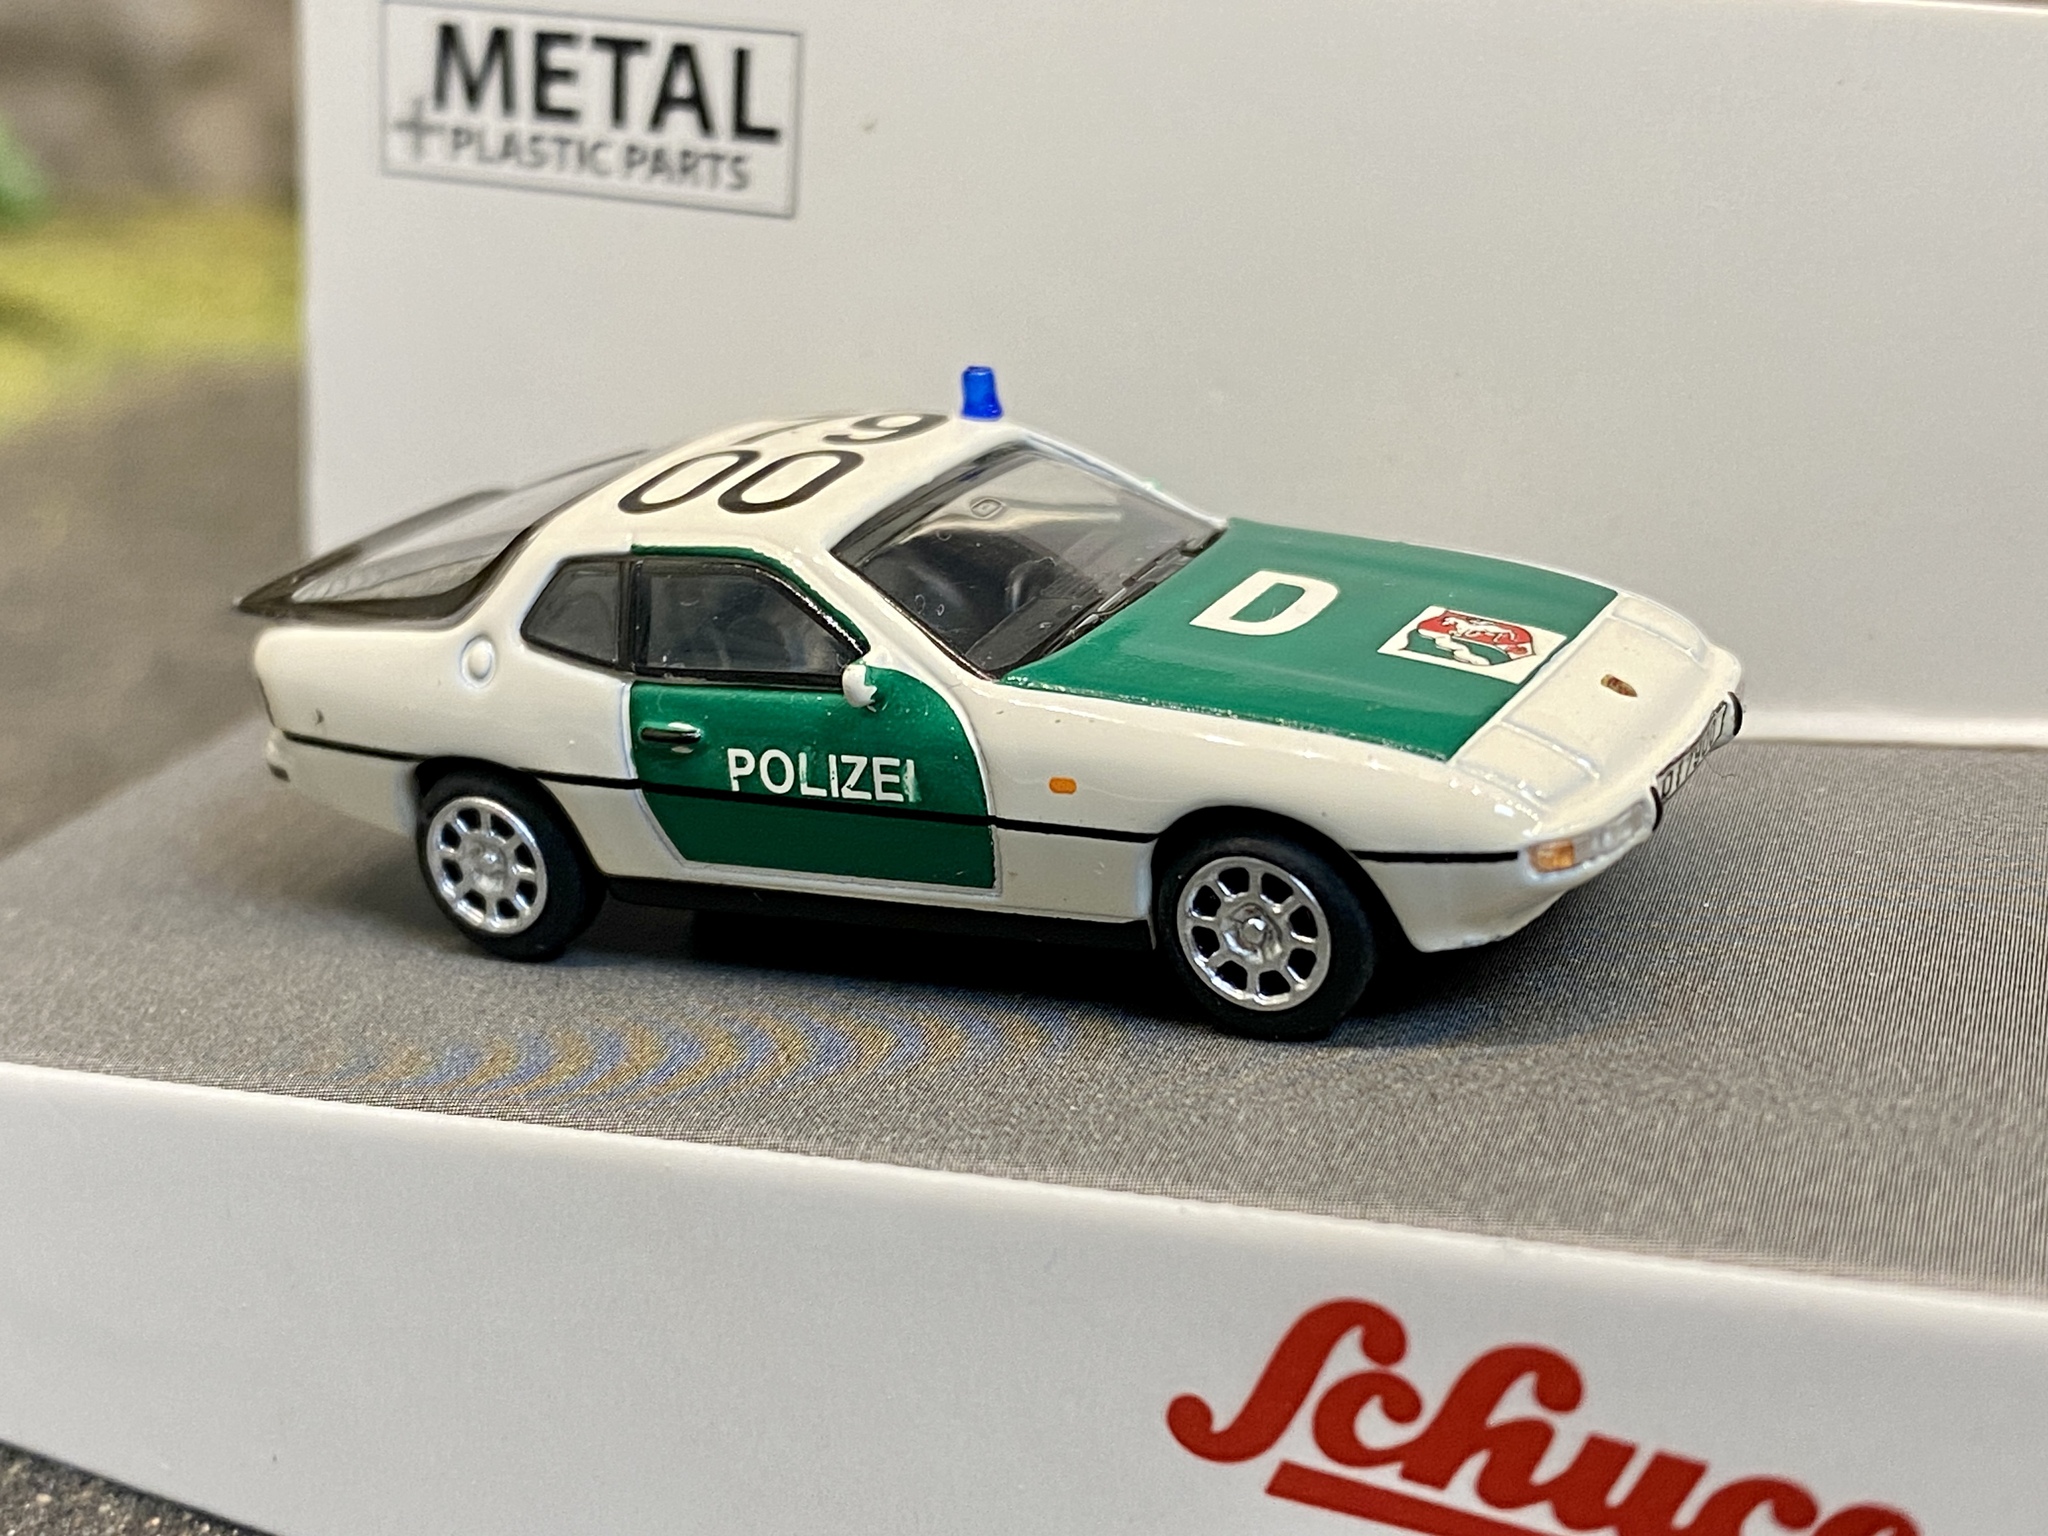 Skala 1/87 H0, Porsche 924 Polizei, Tysk polisbil fr Schuco